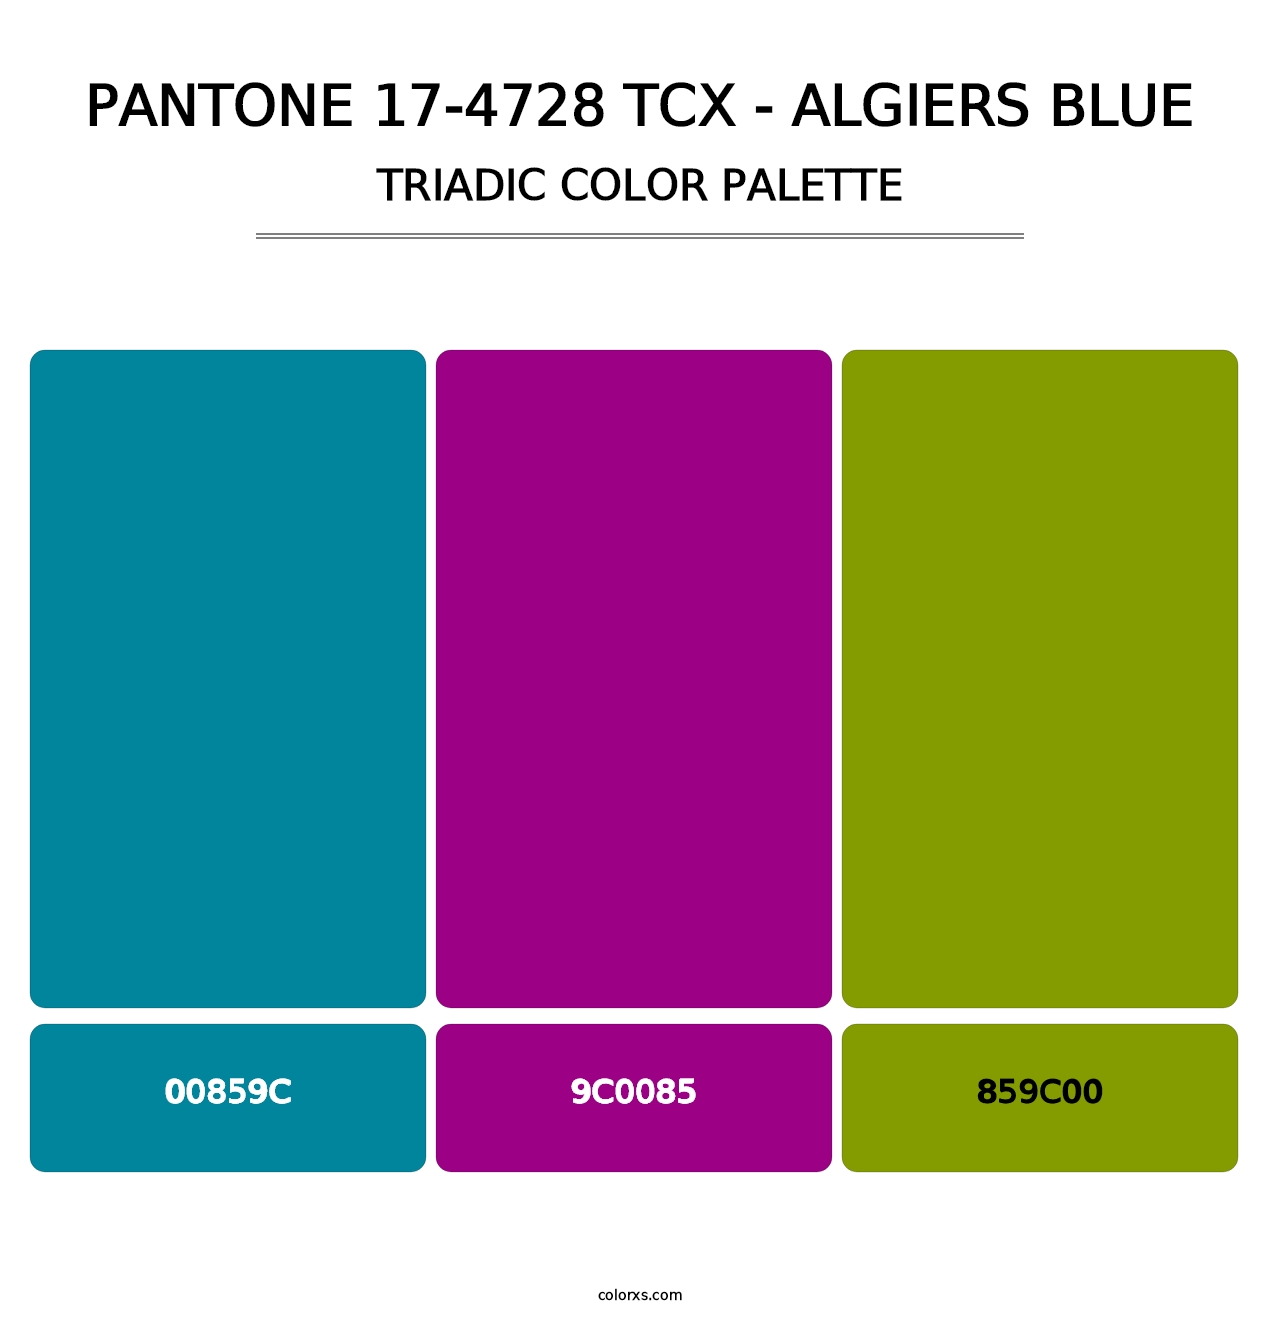 PANTONE 17-4728 TCX - Algiers Blue - Triadic Color Palette